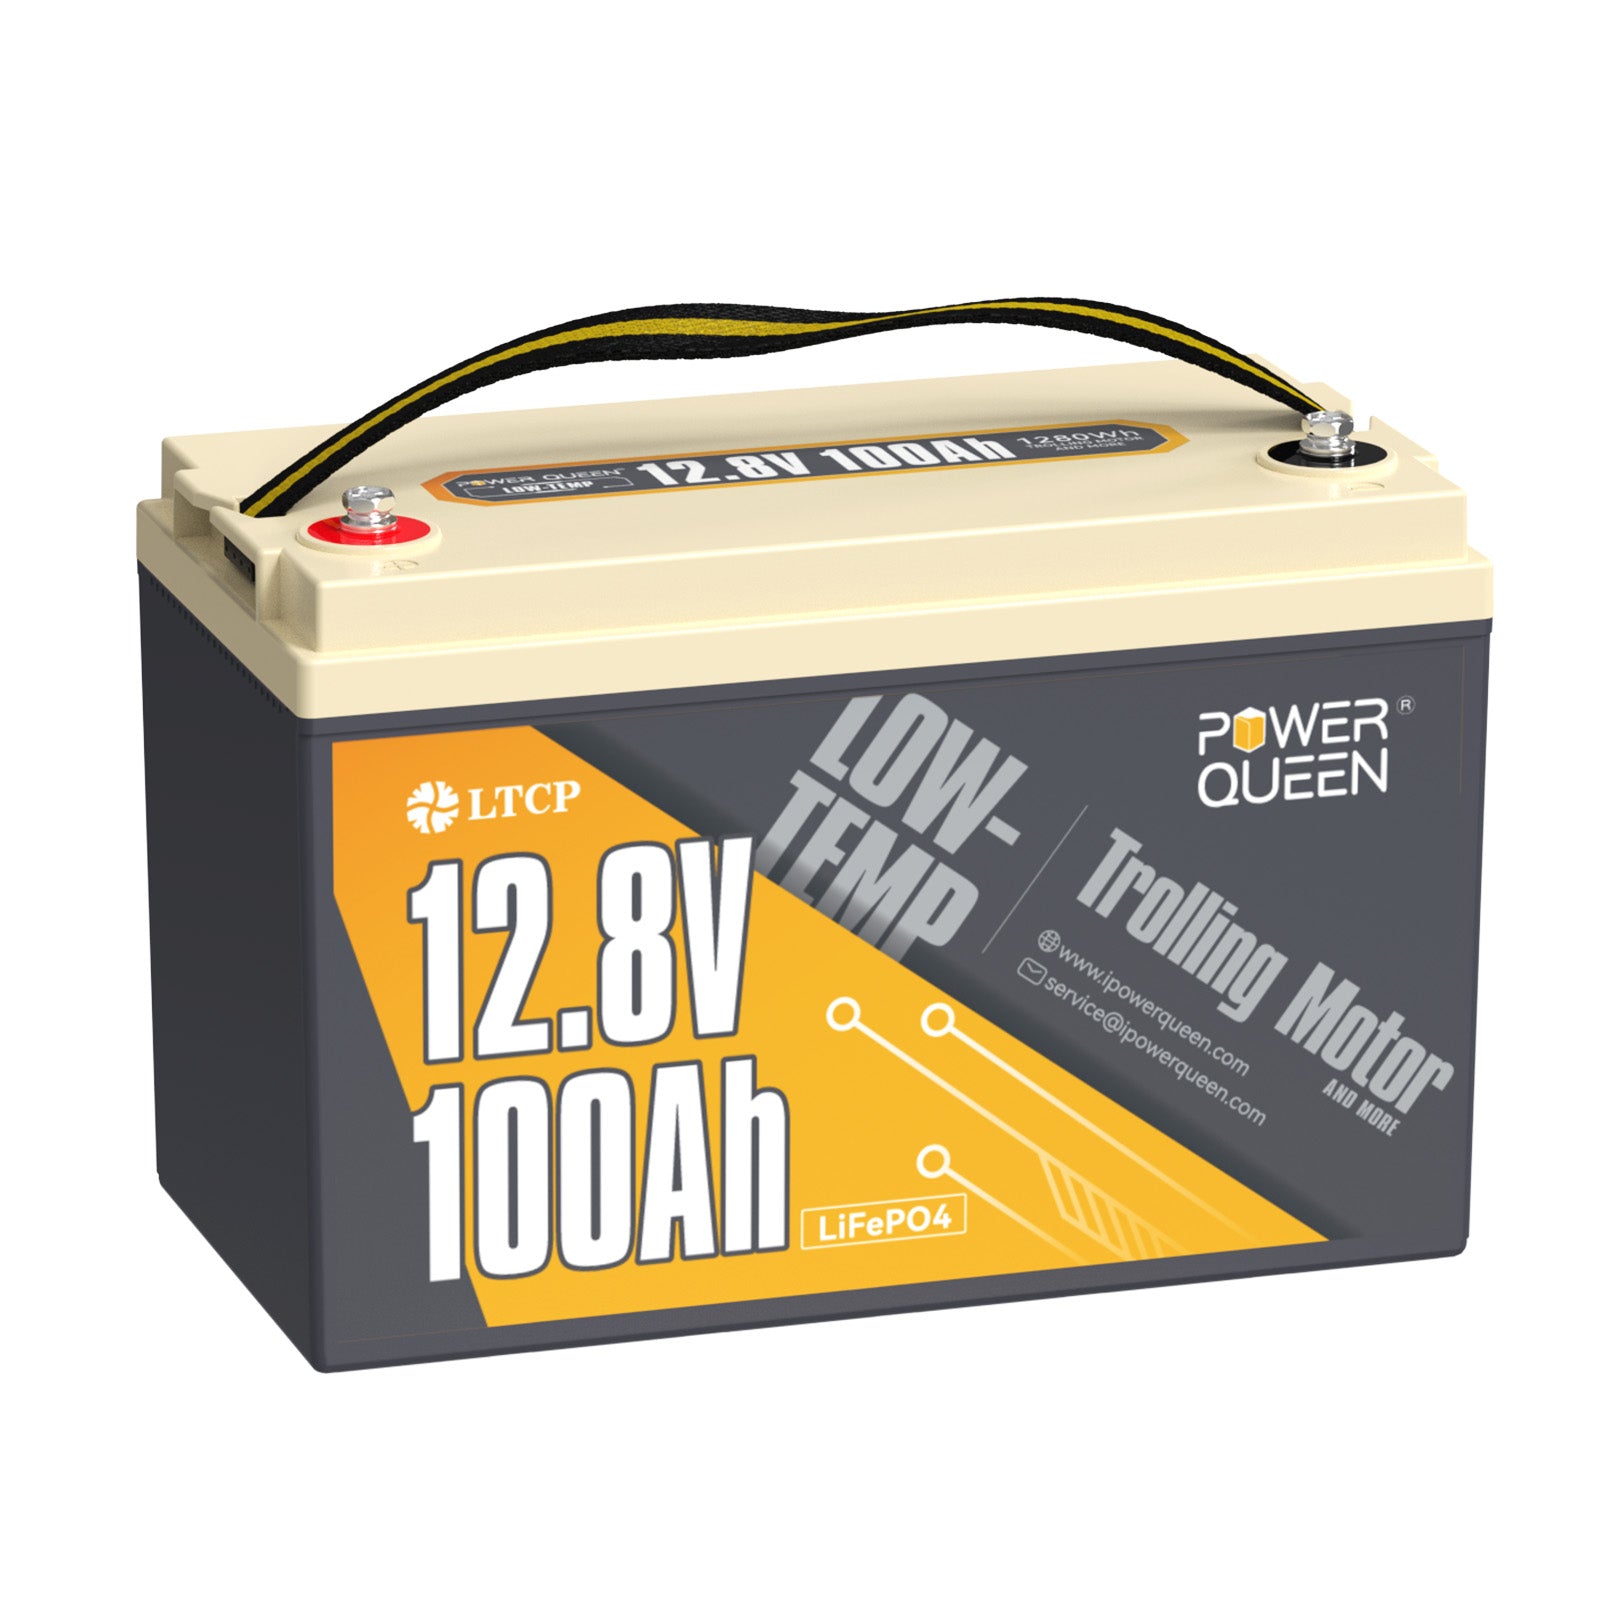 Batterie LiFePO4 basse température Power Queen 12,8 V 100 Ah, batterie pour moteur de pêche à la traîne